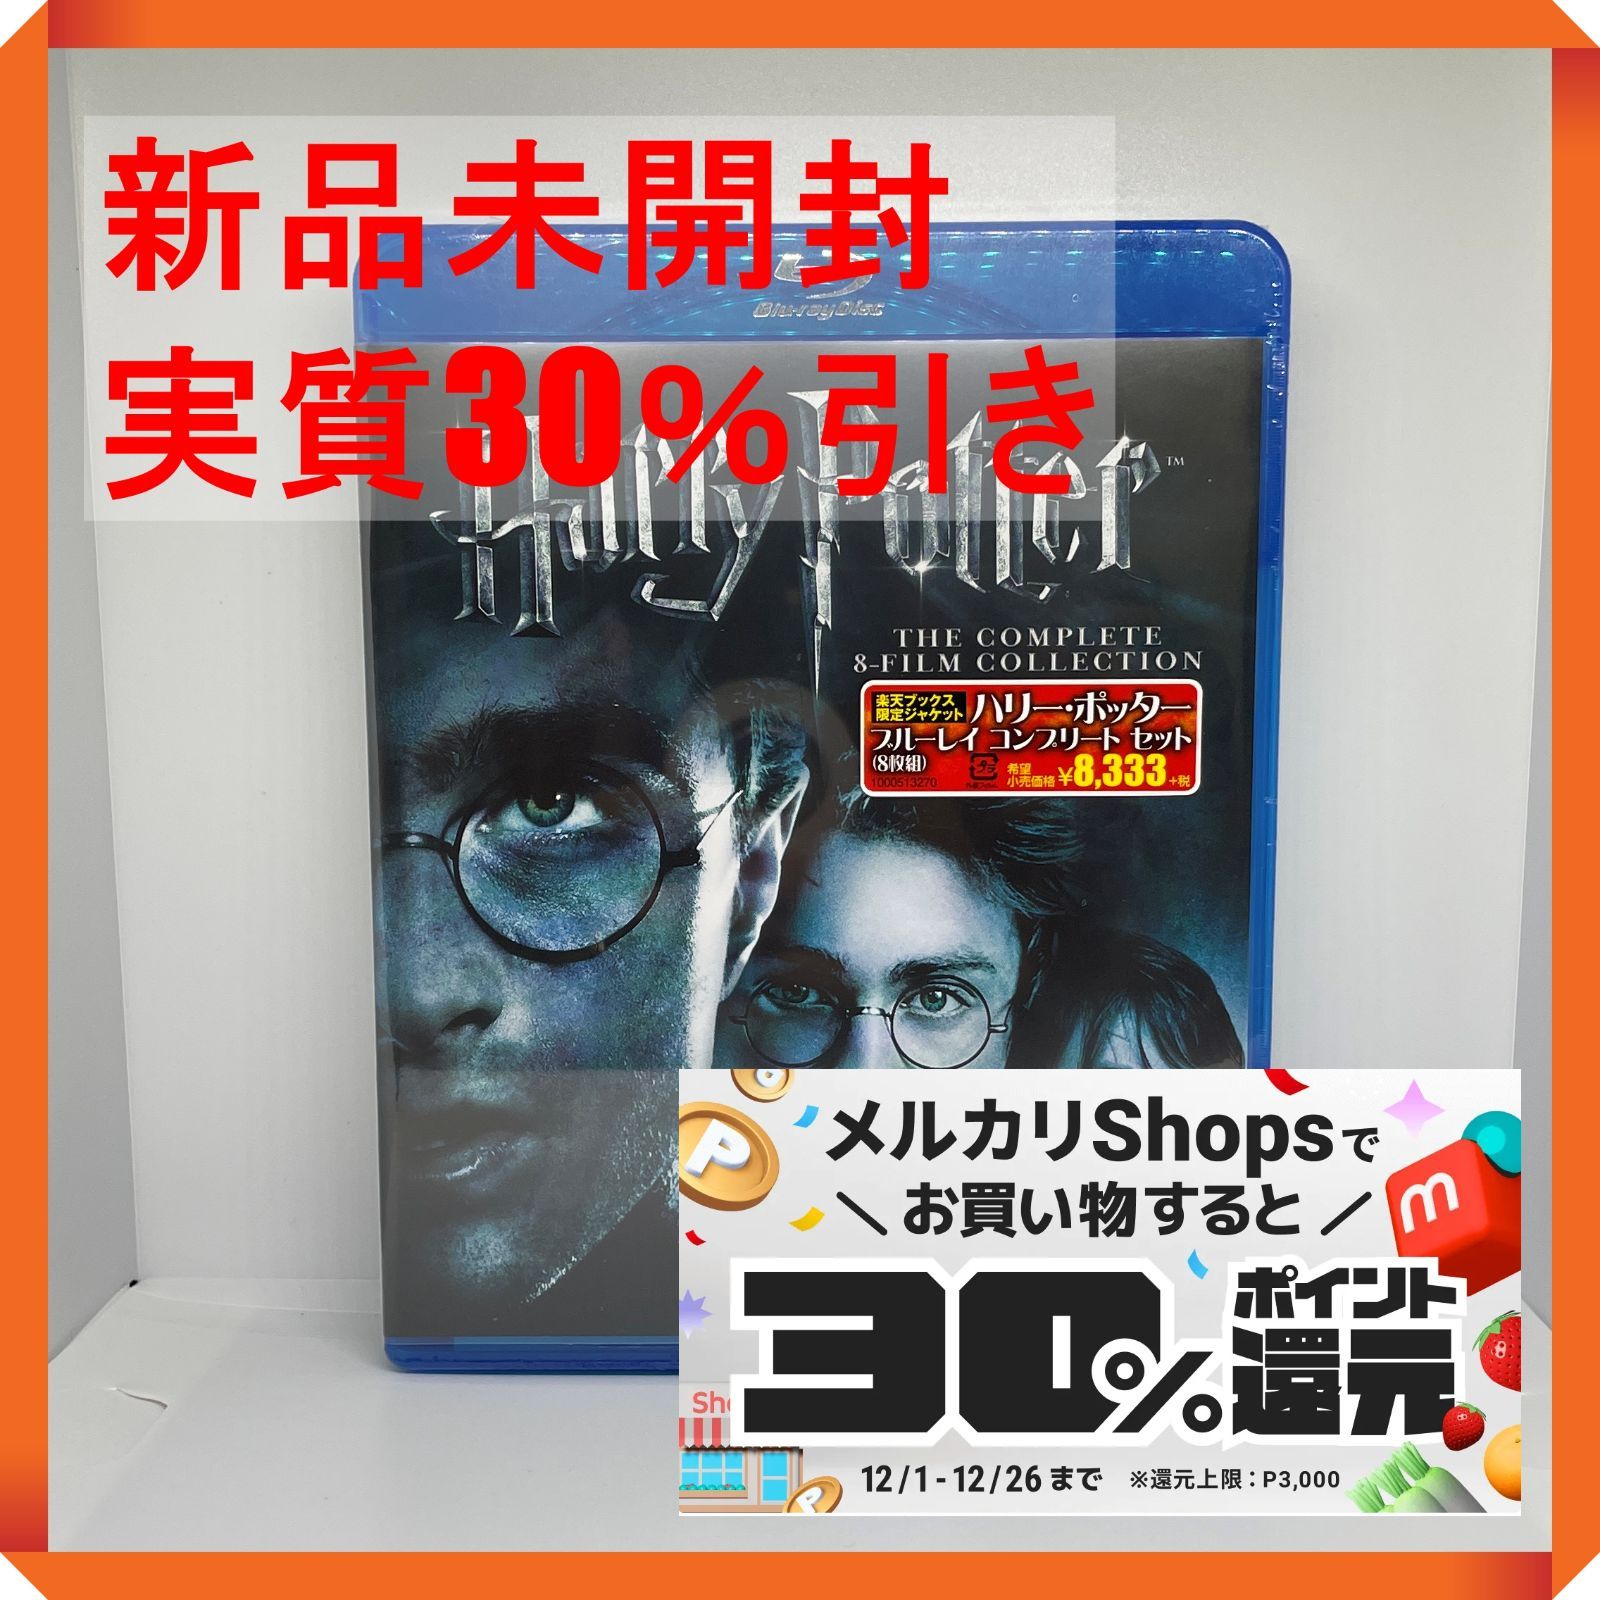 ハリー・ポッター ブルーレイ コンプリート セット 8枚組 Blu-ray ①